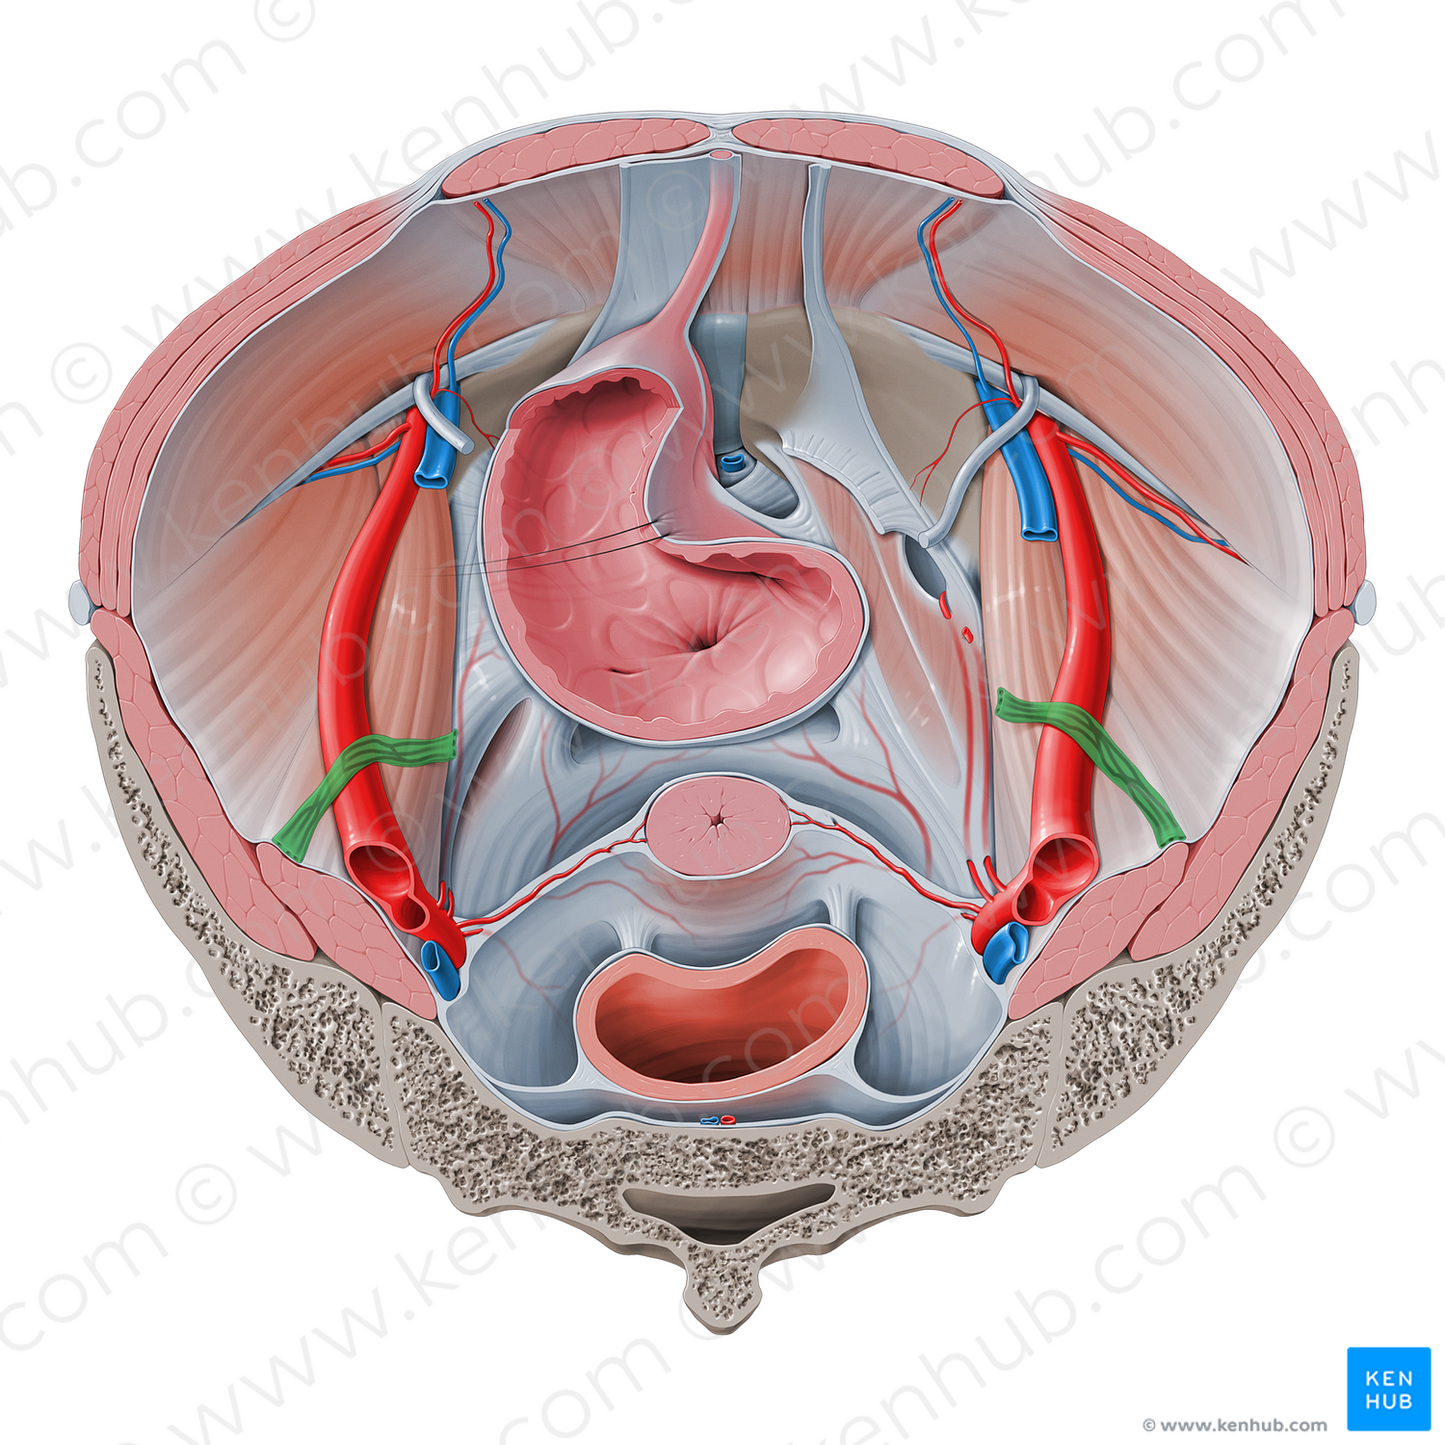 Suspensory ligament of ovary (#4625)